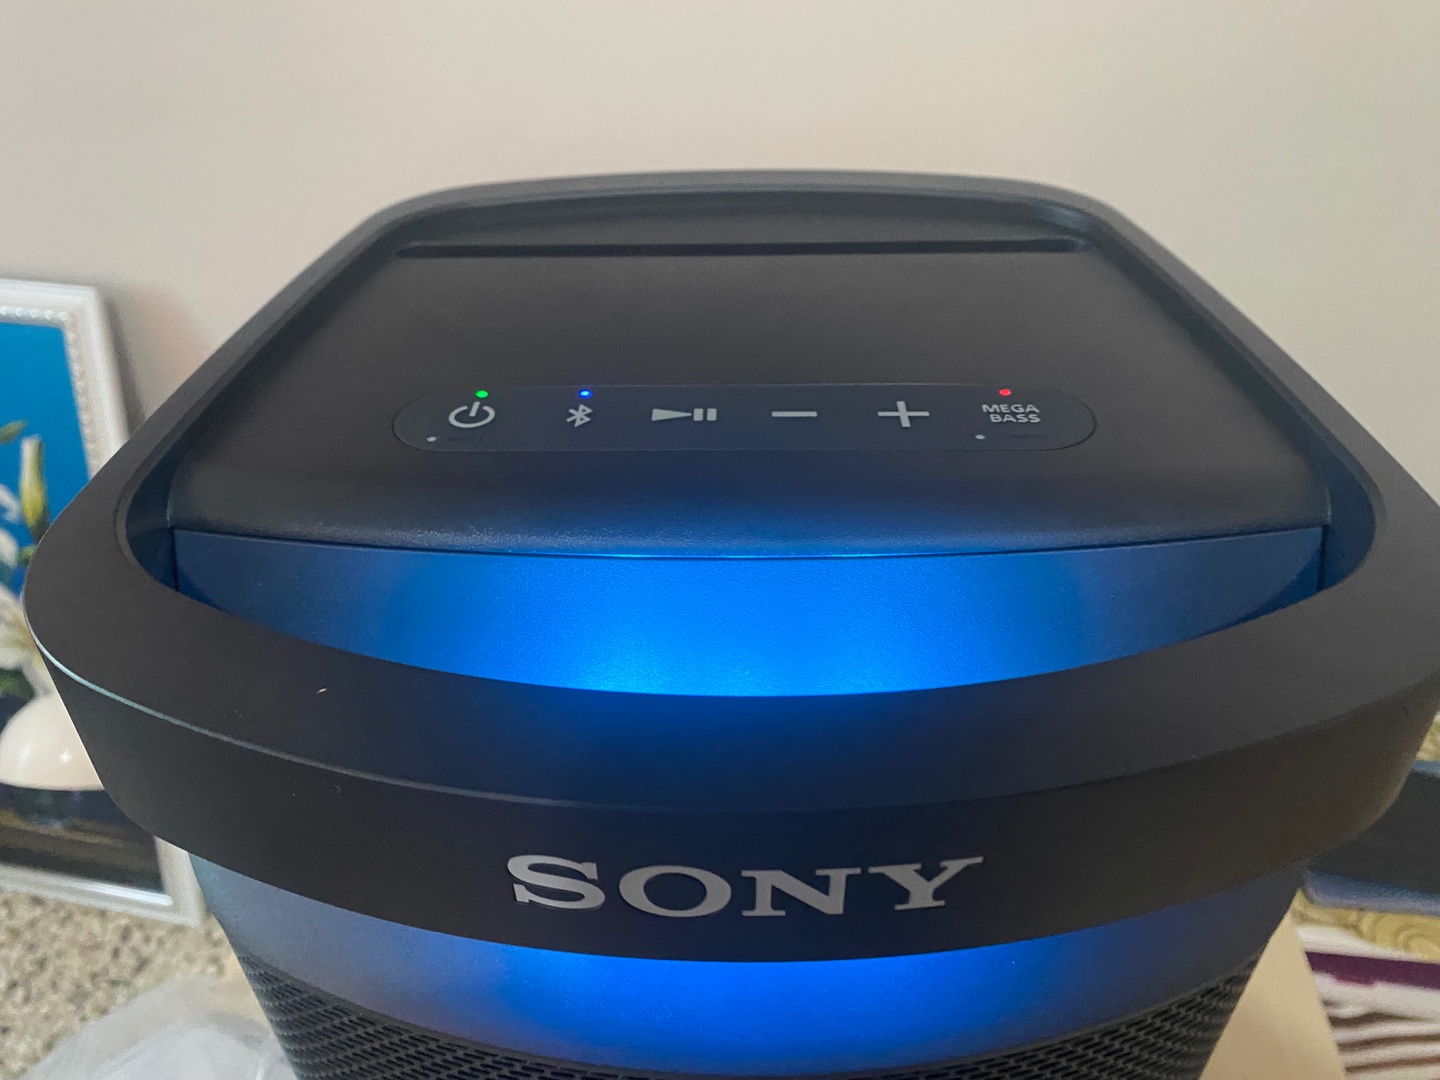 camaras y audio - Bocinas Sony Original recargable hasta 20 horas de música continua  0